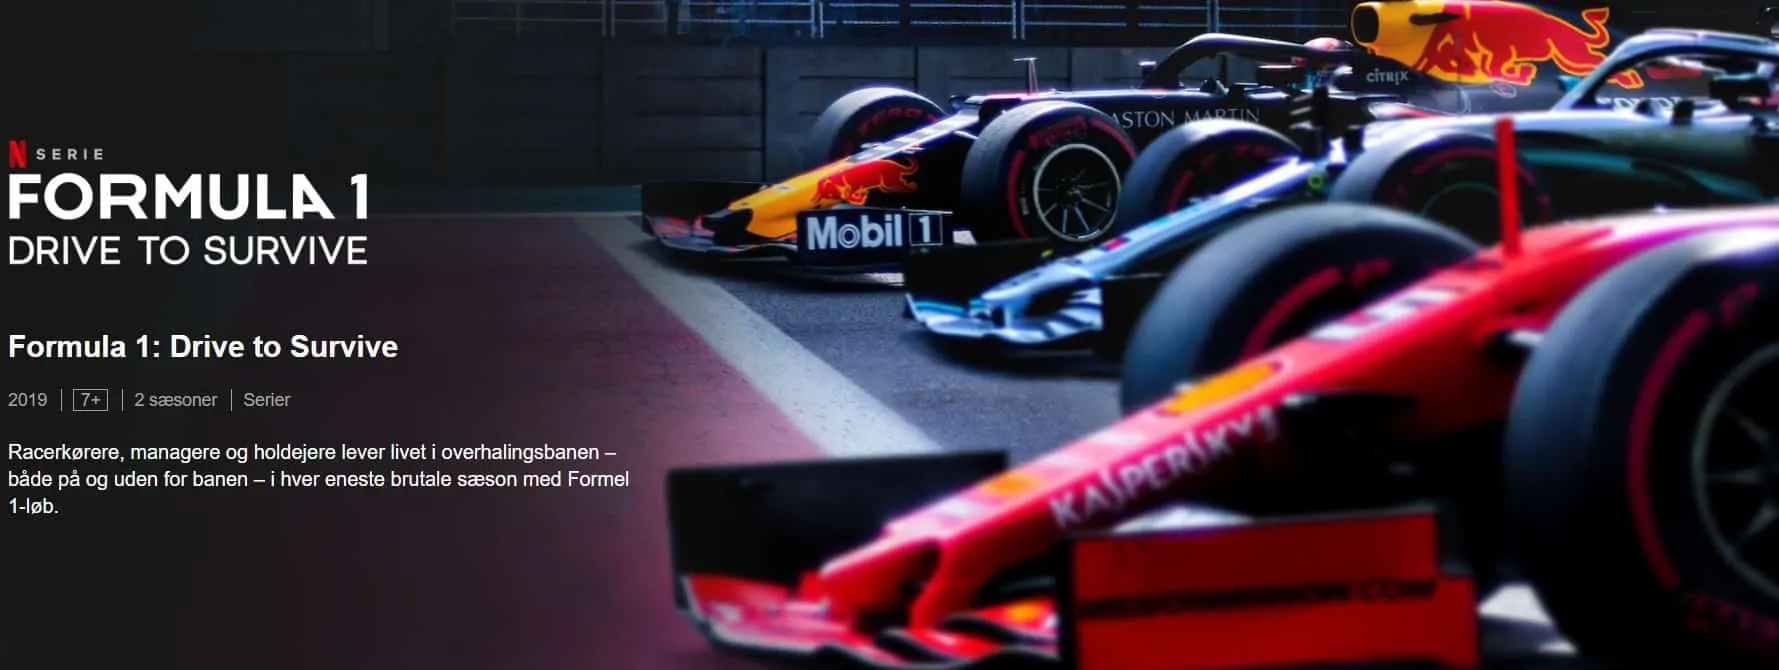 Formula 1 Drive to survive, Netflix